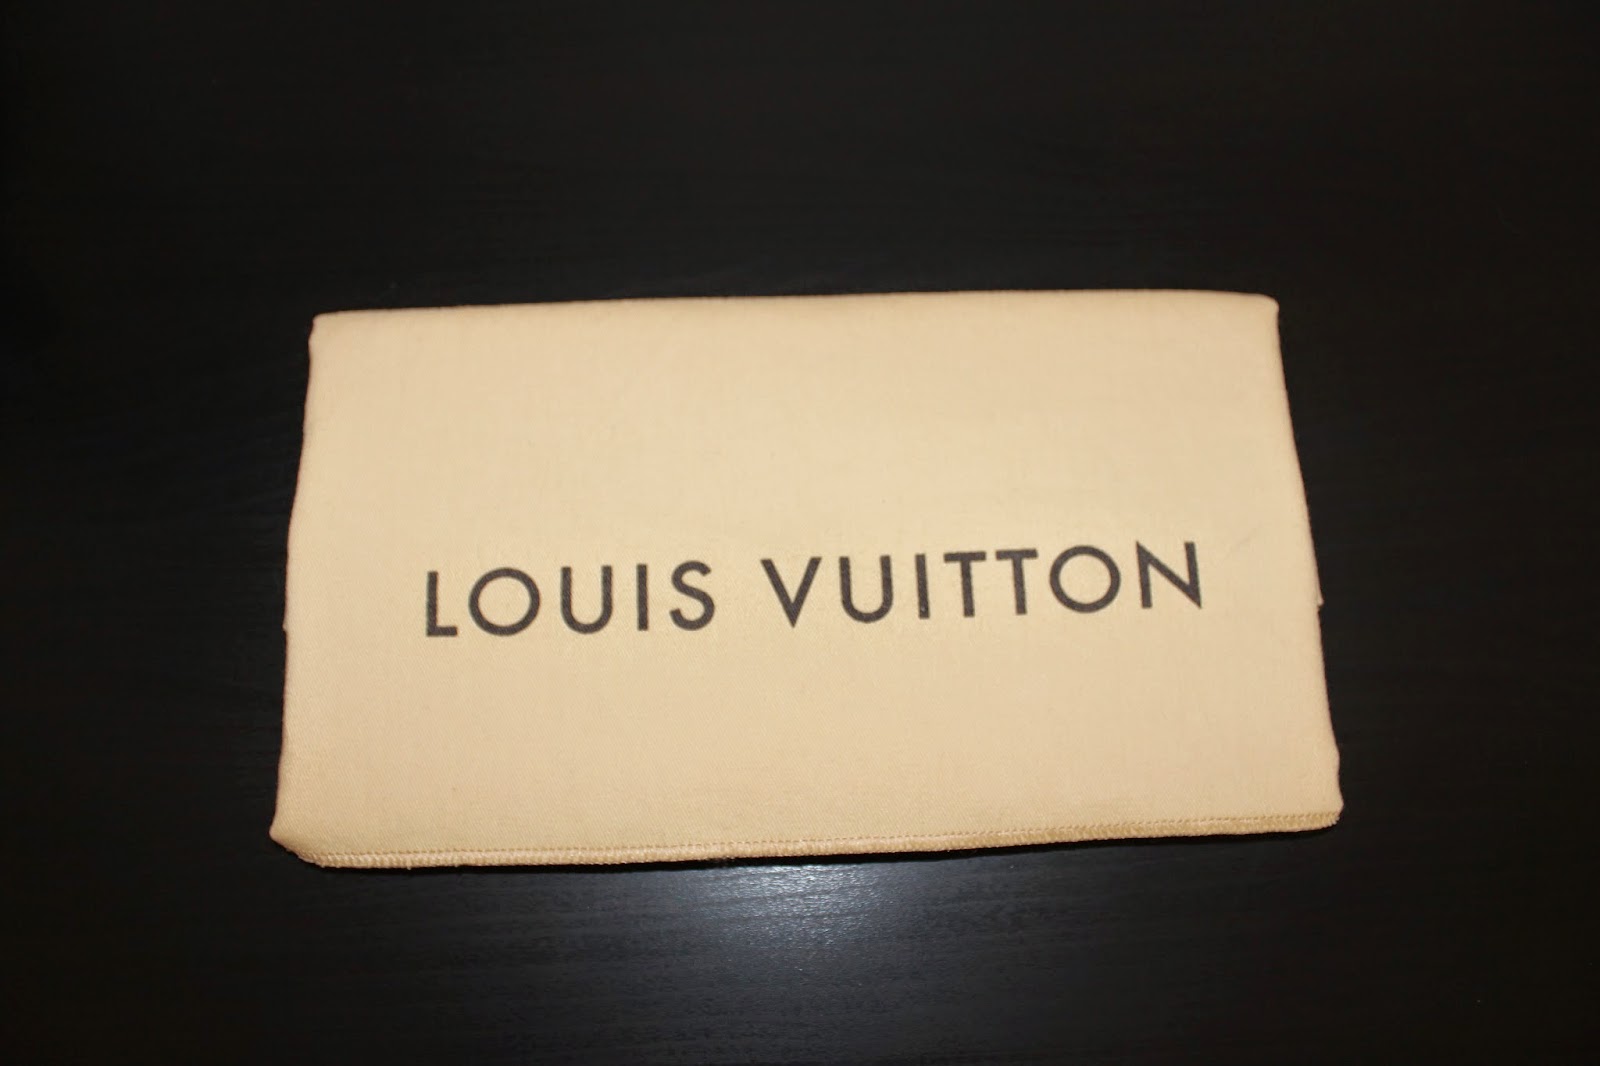 Folded up Louis Vuitton Speedy Bandoulière 30 dust bag